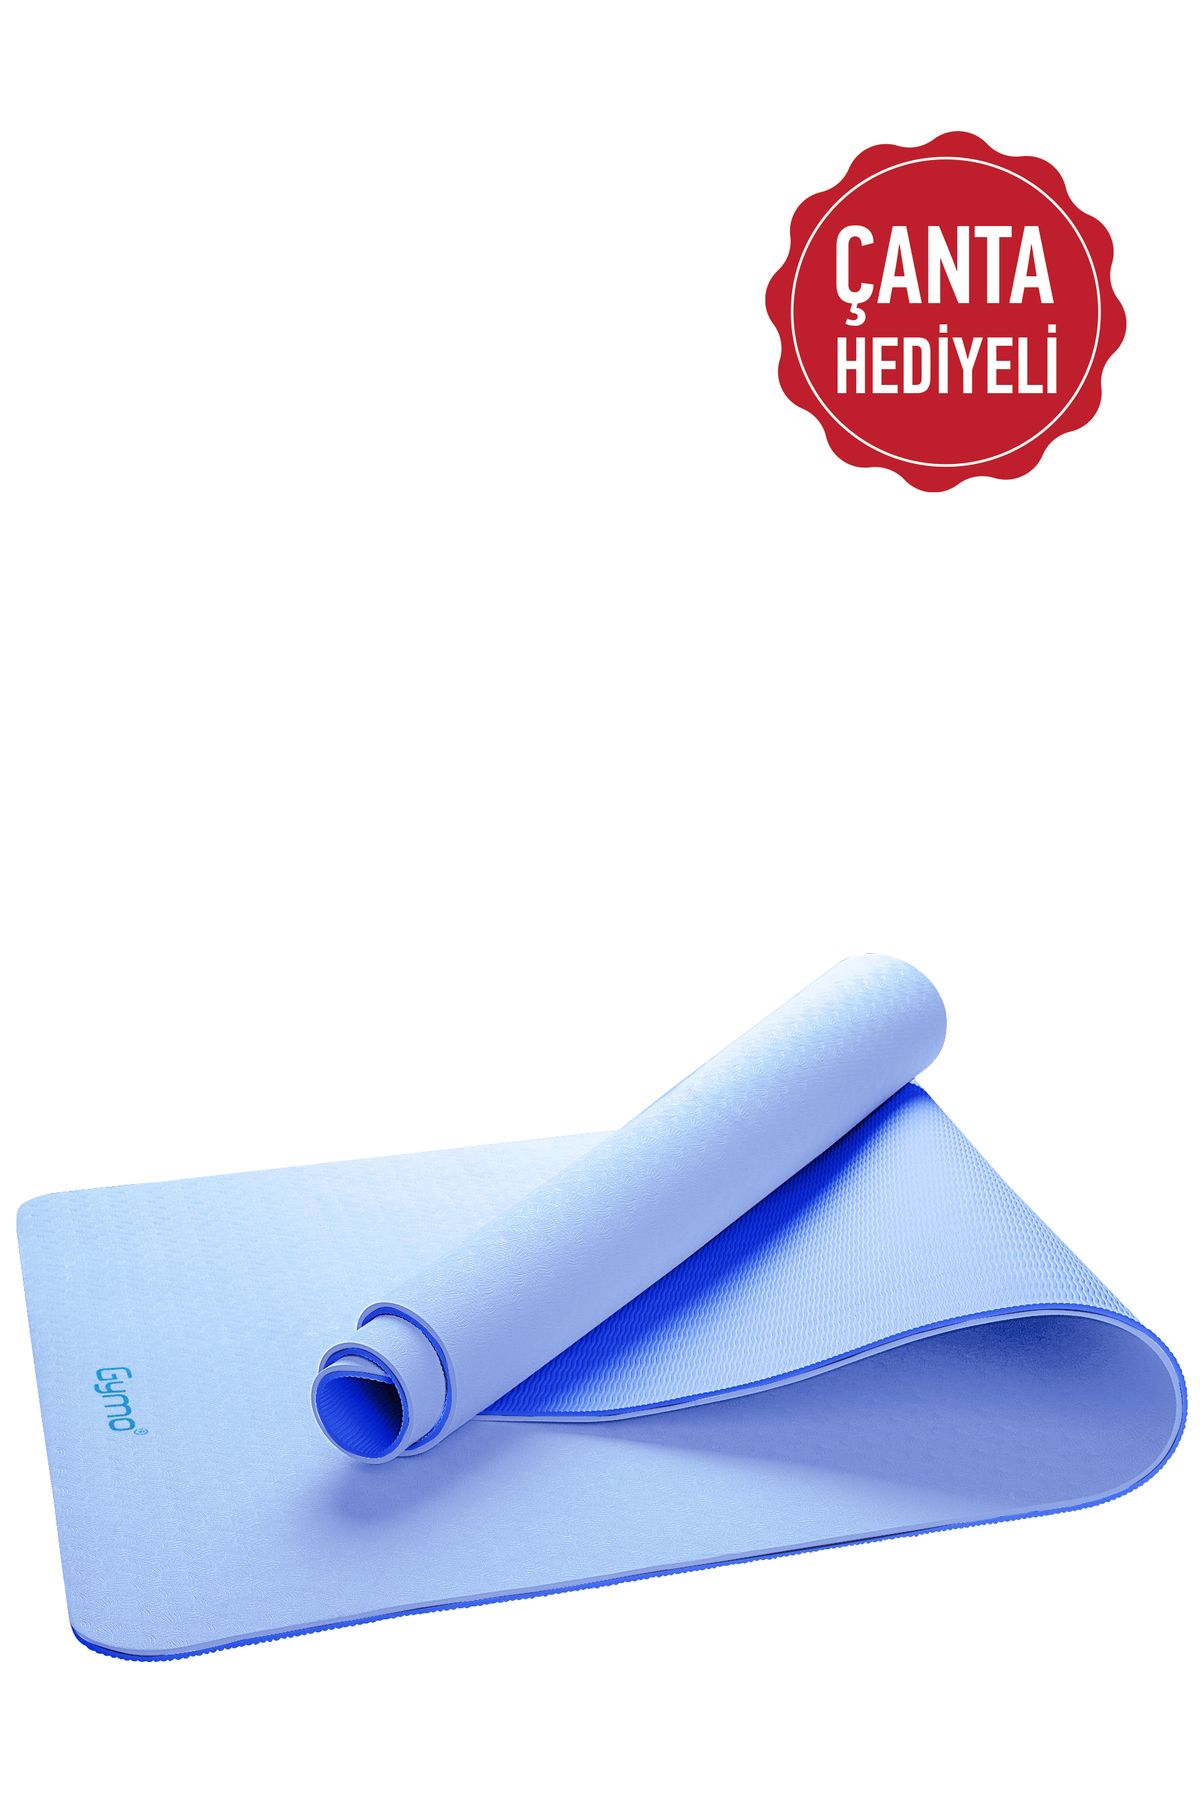 Gymo Ekolojik 6mm Tpe Yoga Matı Pilates Minderi Açık Mavi